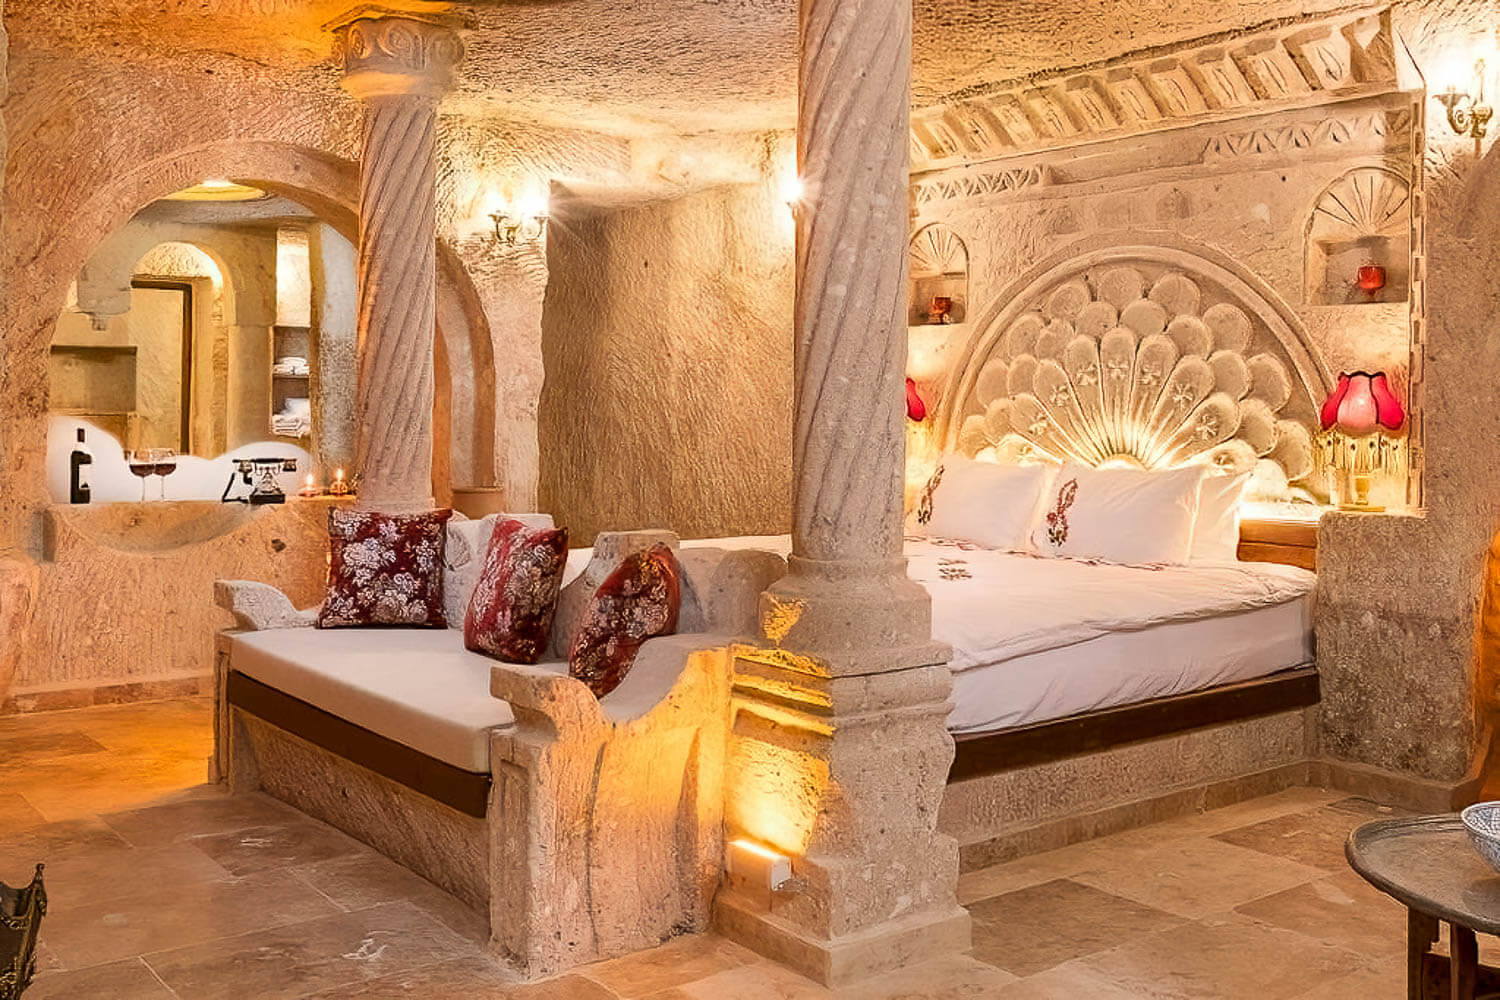 Kayata Cave Suites in Cappadocia